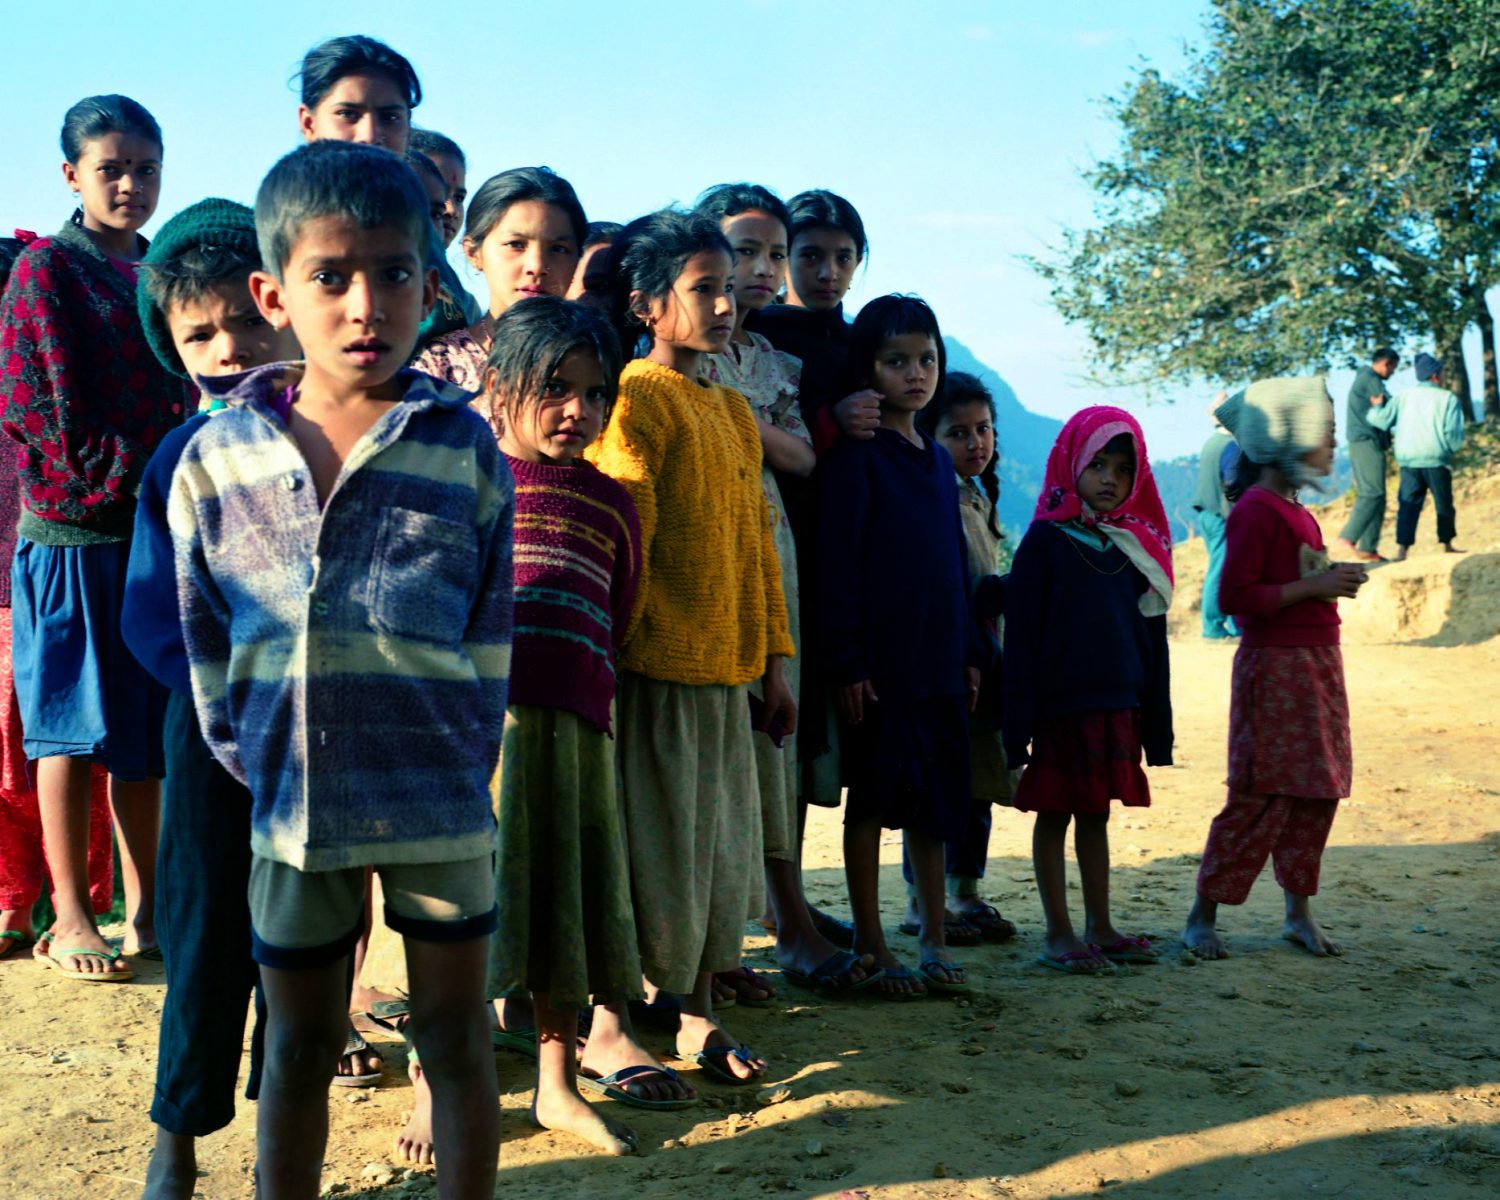 Nepal children